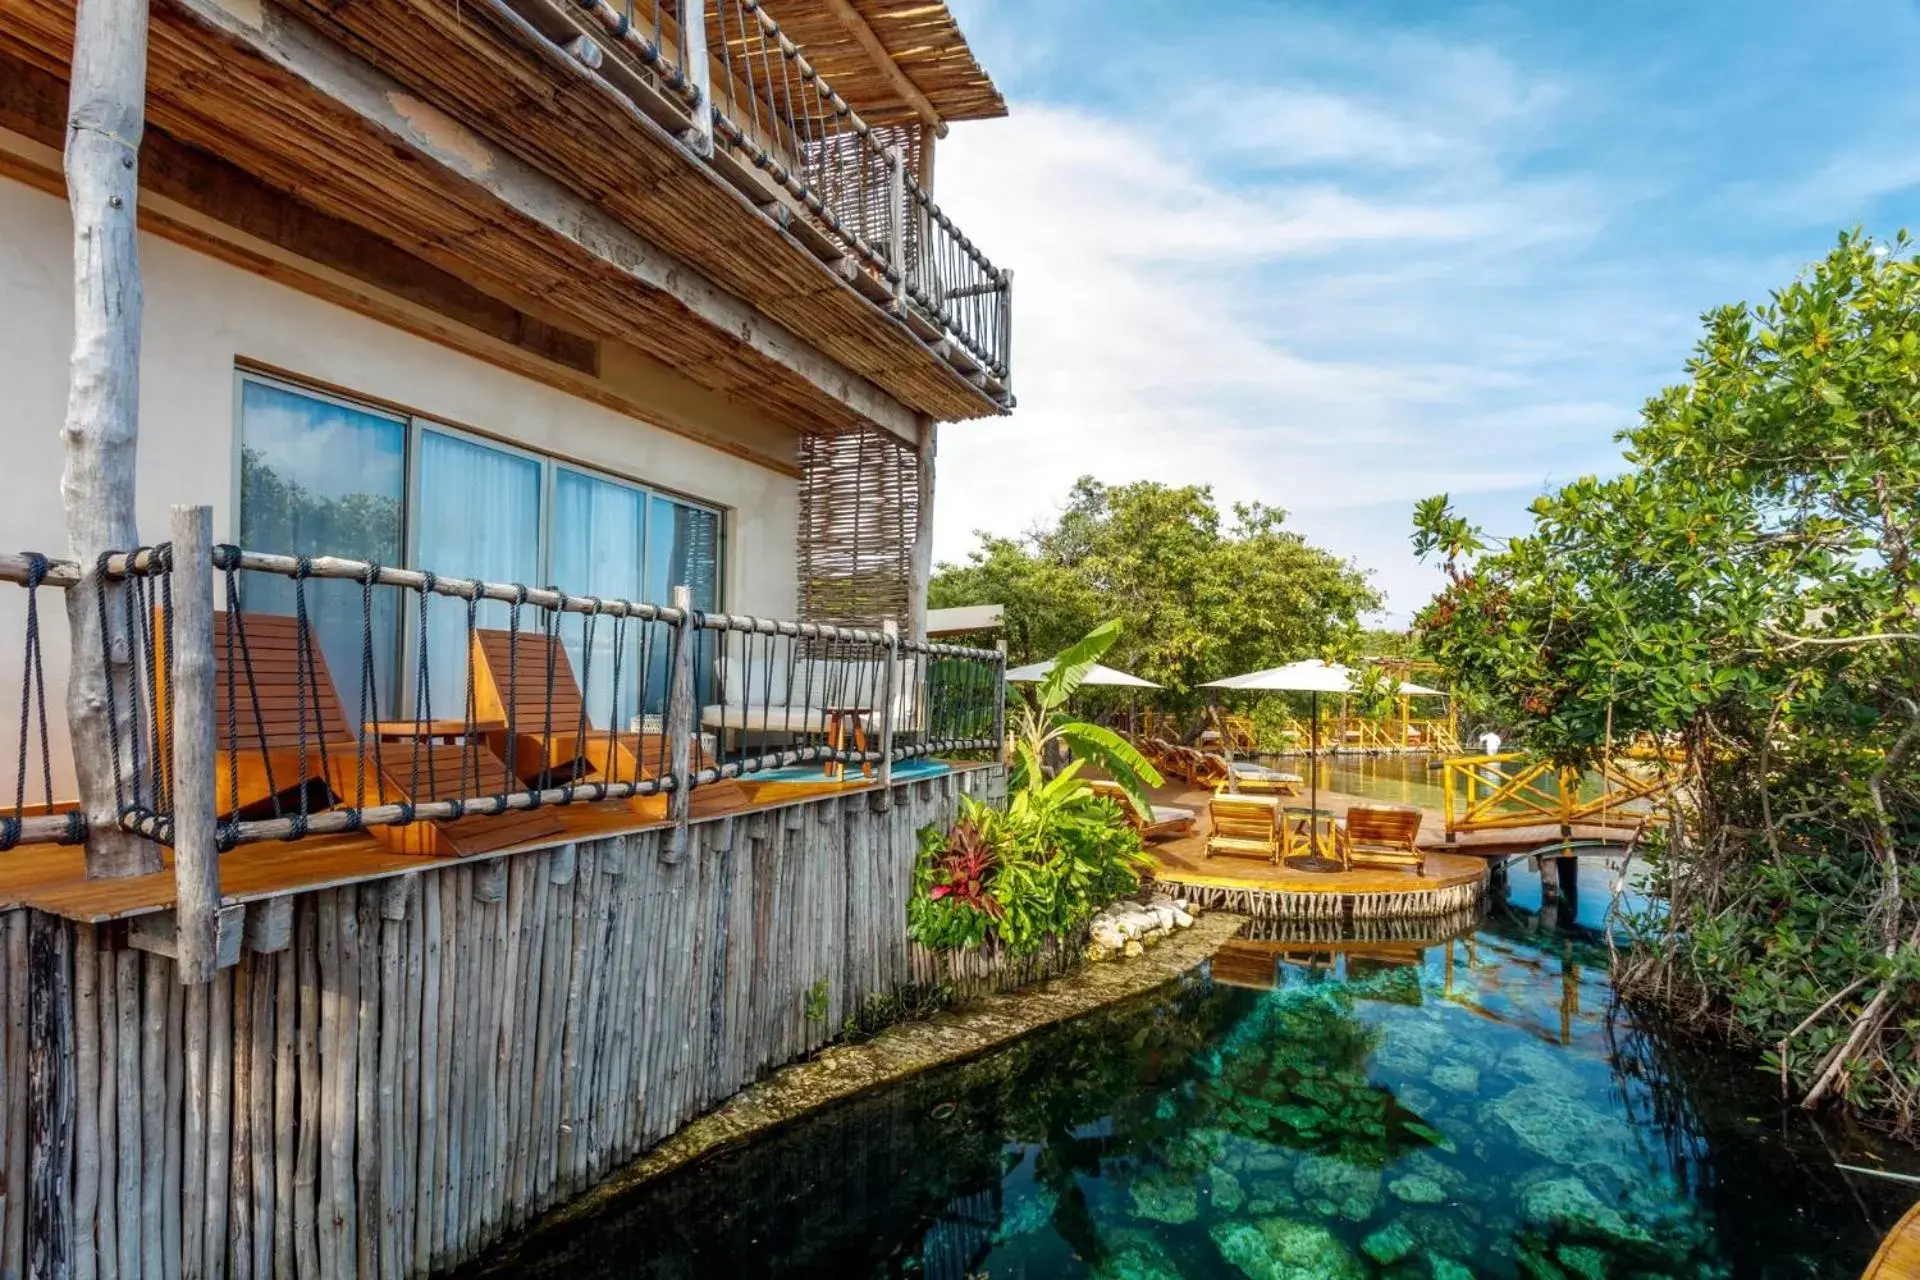 Off site in Hotel Shibari - Restaurant & Cenote Club